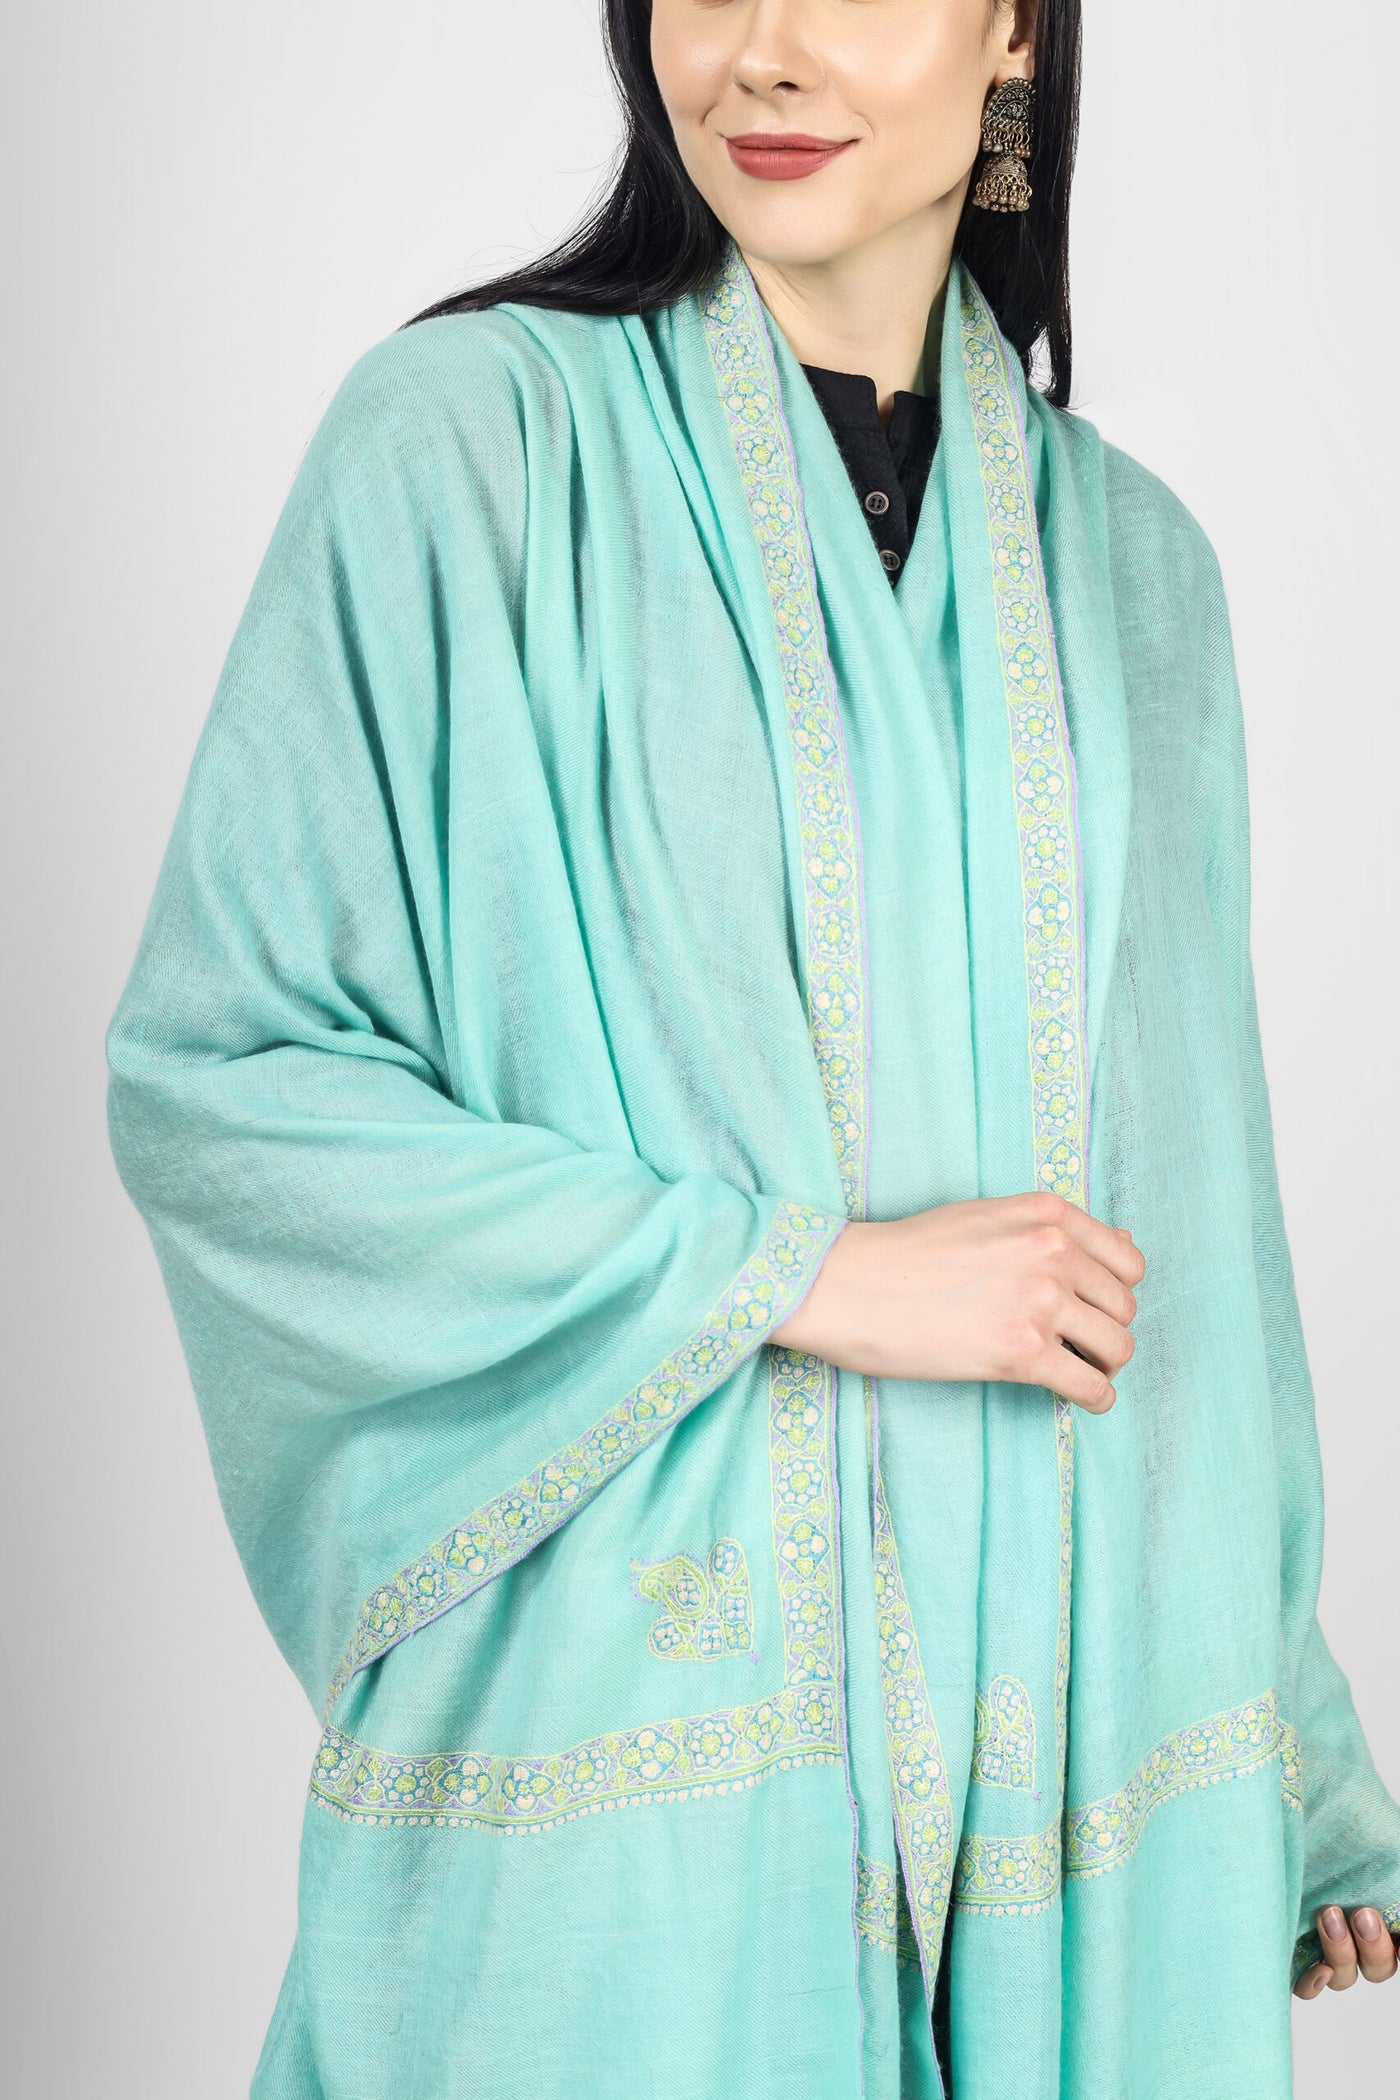 Turquoise Pashmina  Pastel hashidaar sozni shawl